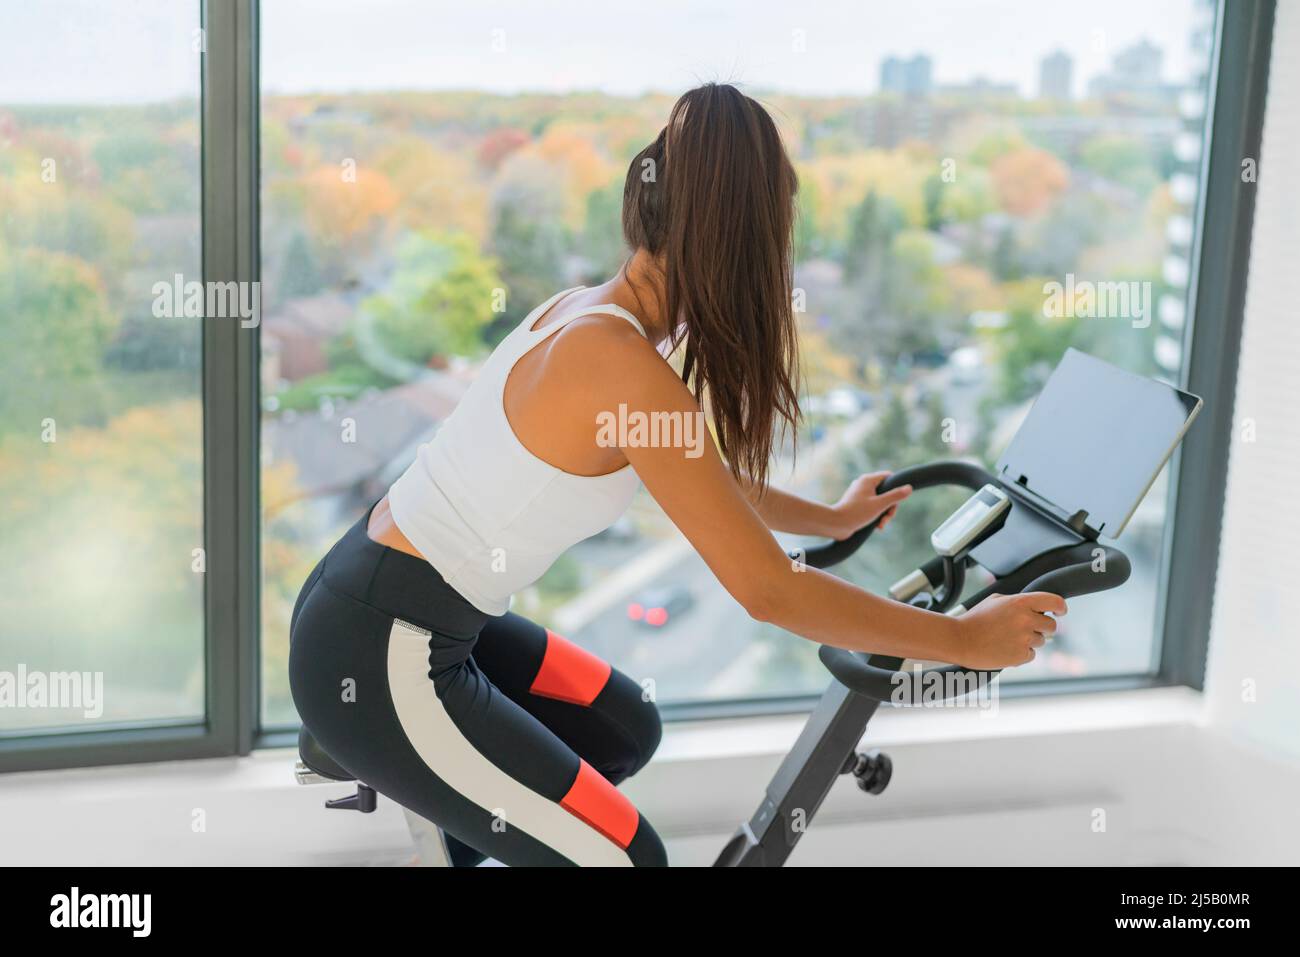 Haga ejercicio en casa en bicicleta interior con la clase en línea en pantalla. Mujer entrenamiento cardio ciclismo en el entrenamiento girar bicicleta activa estilo de vida de la aptitud Foto de stock